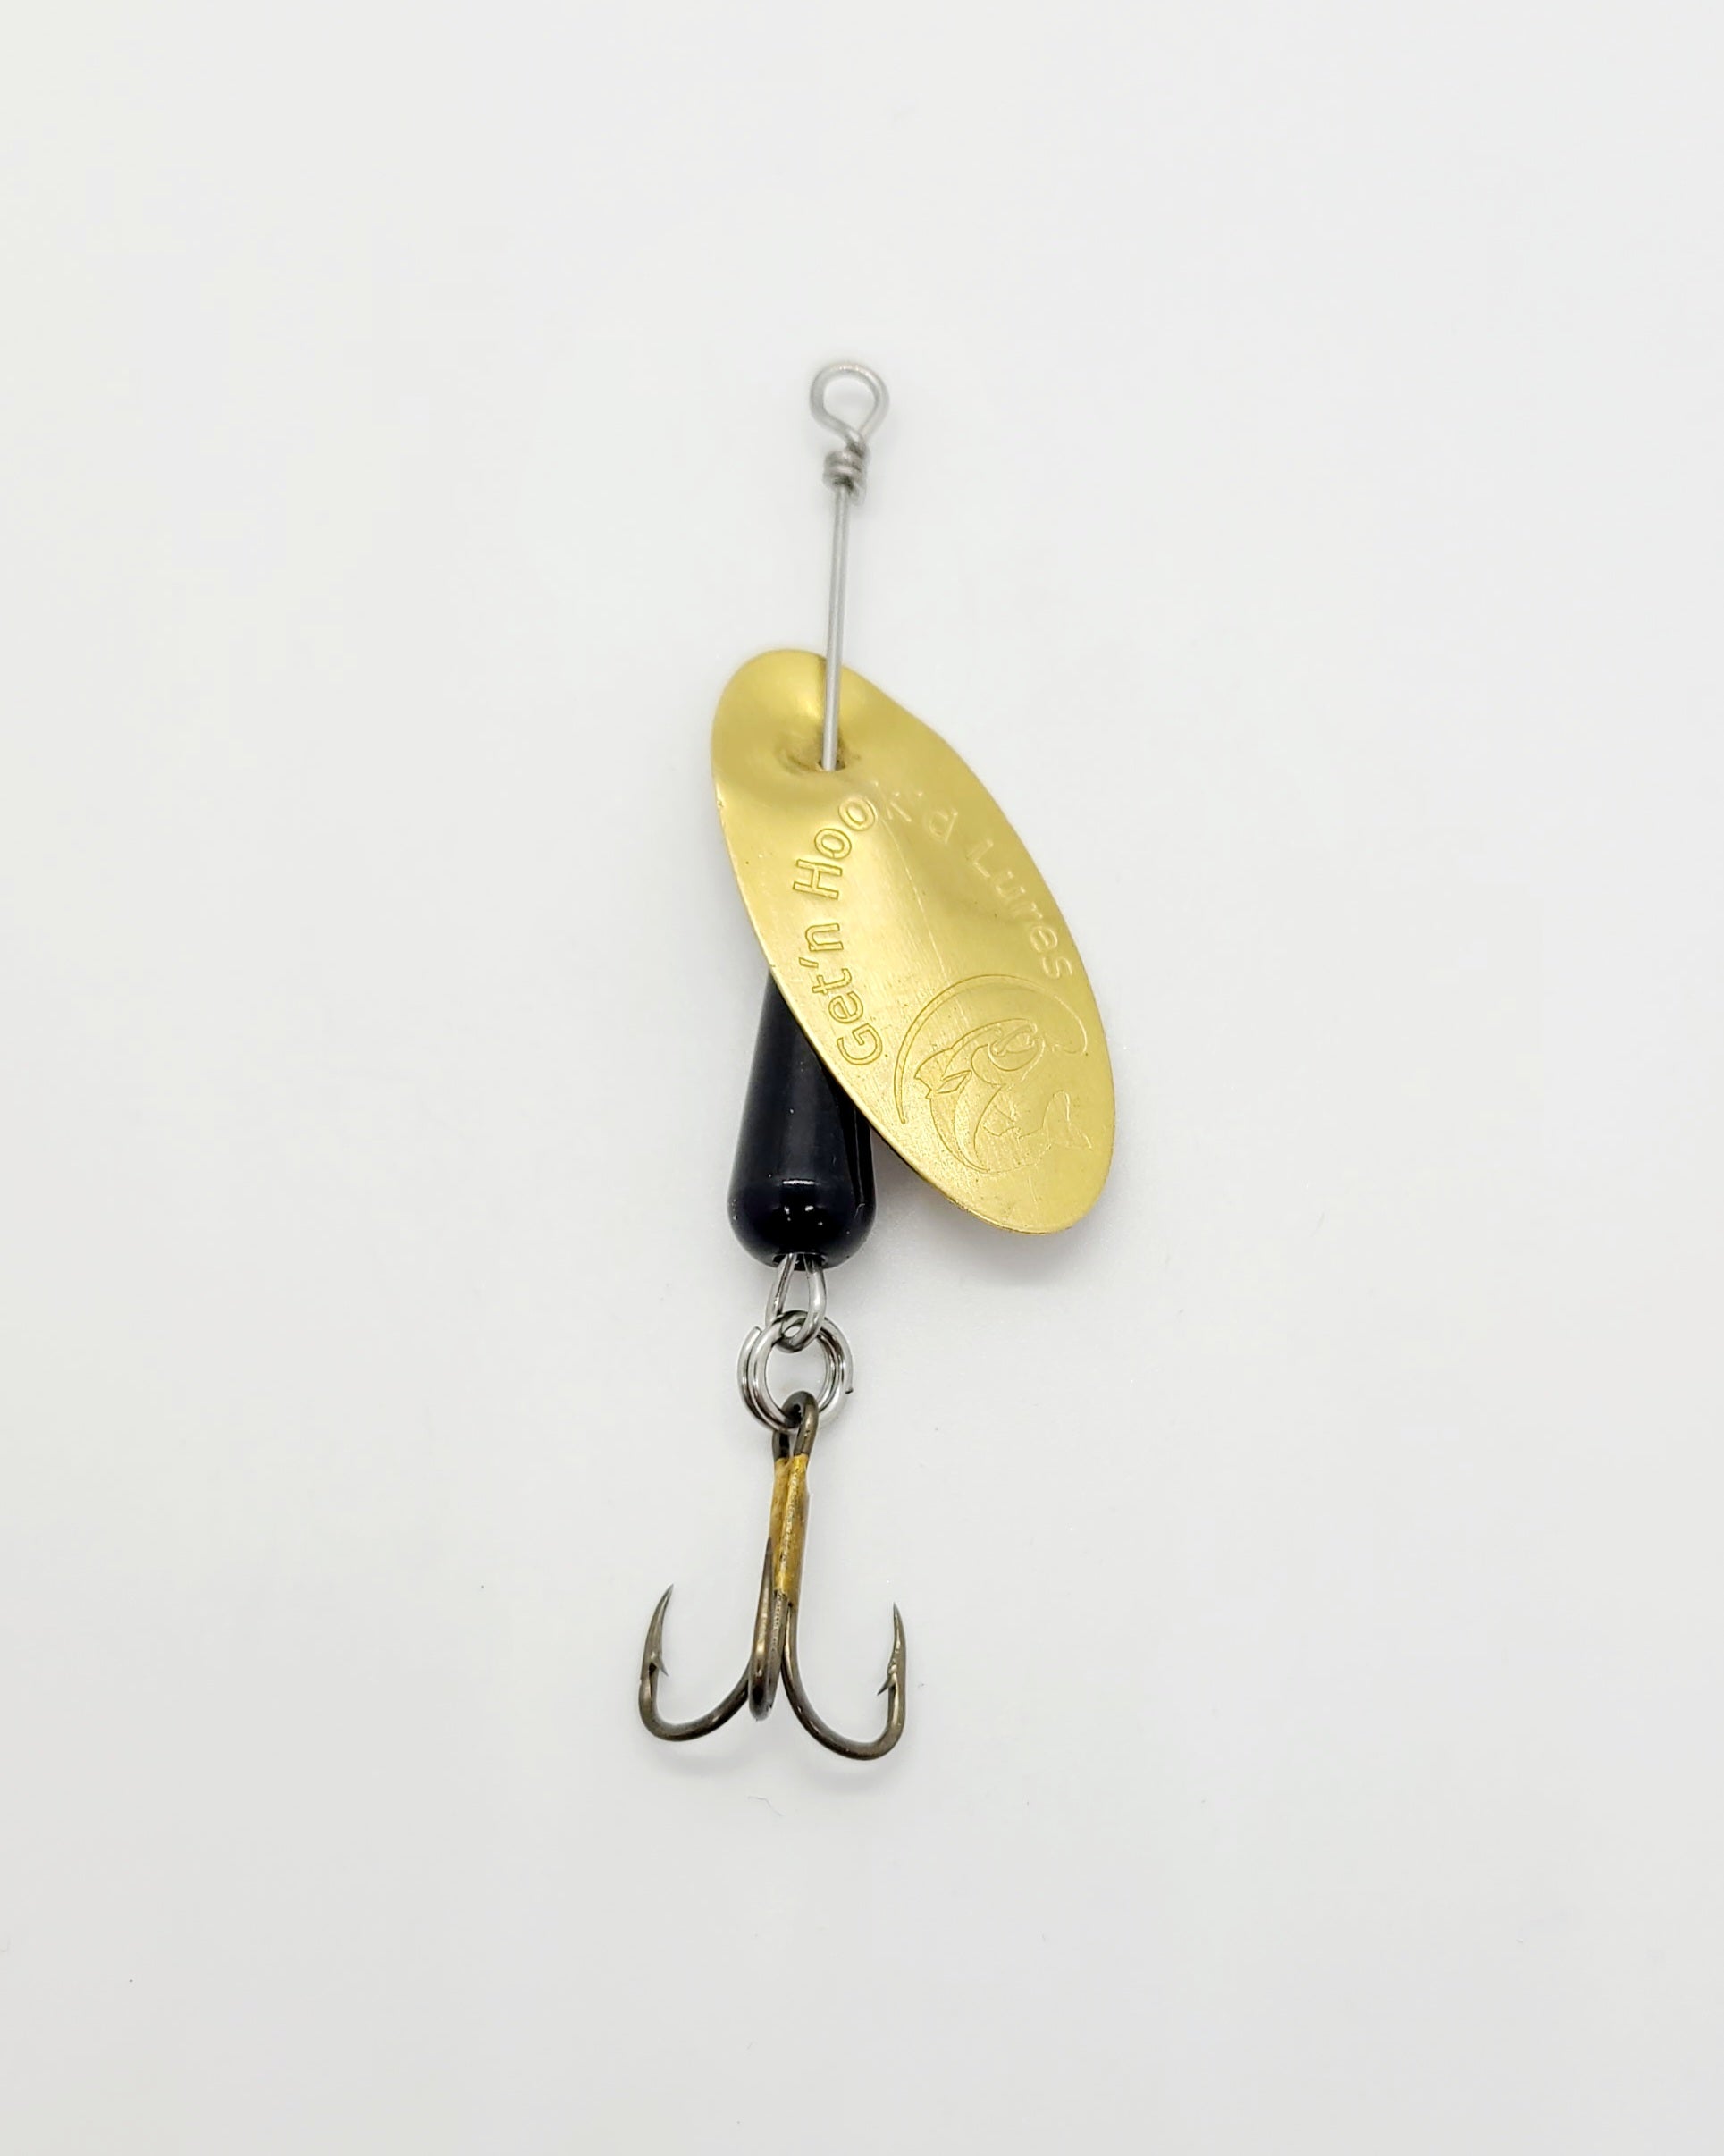 Get'n Hook'd Brass Spinner #5 - Get'n Hook'd Lures